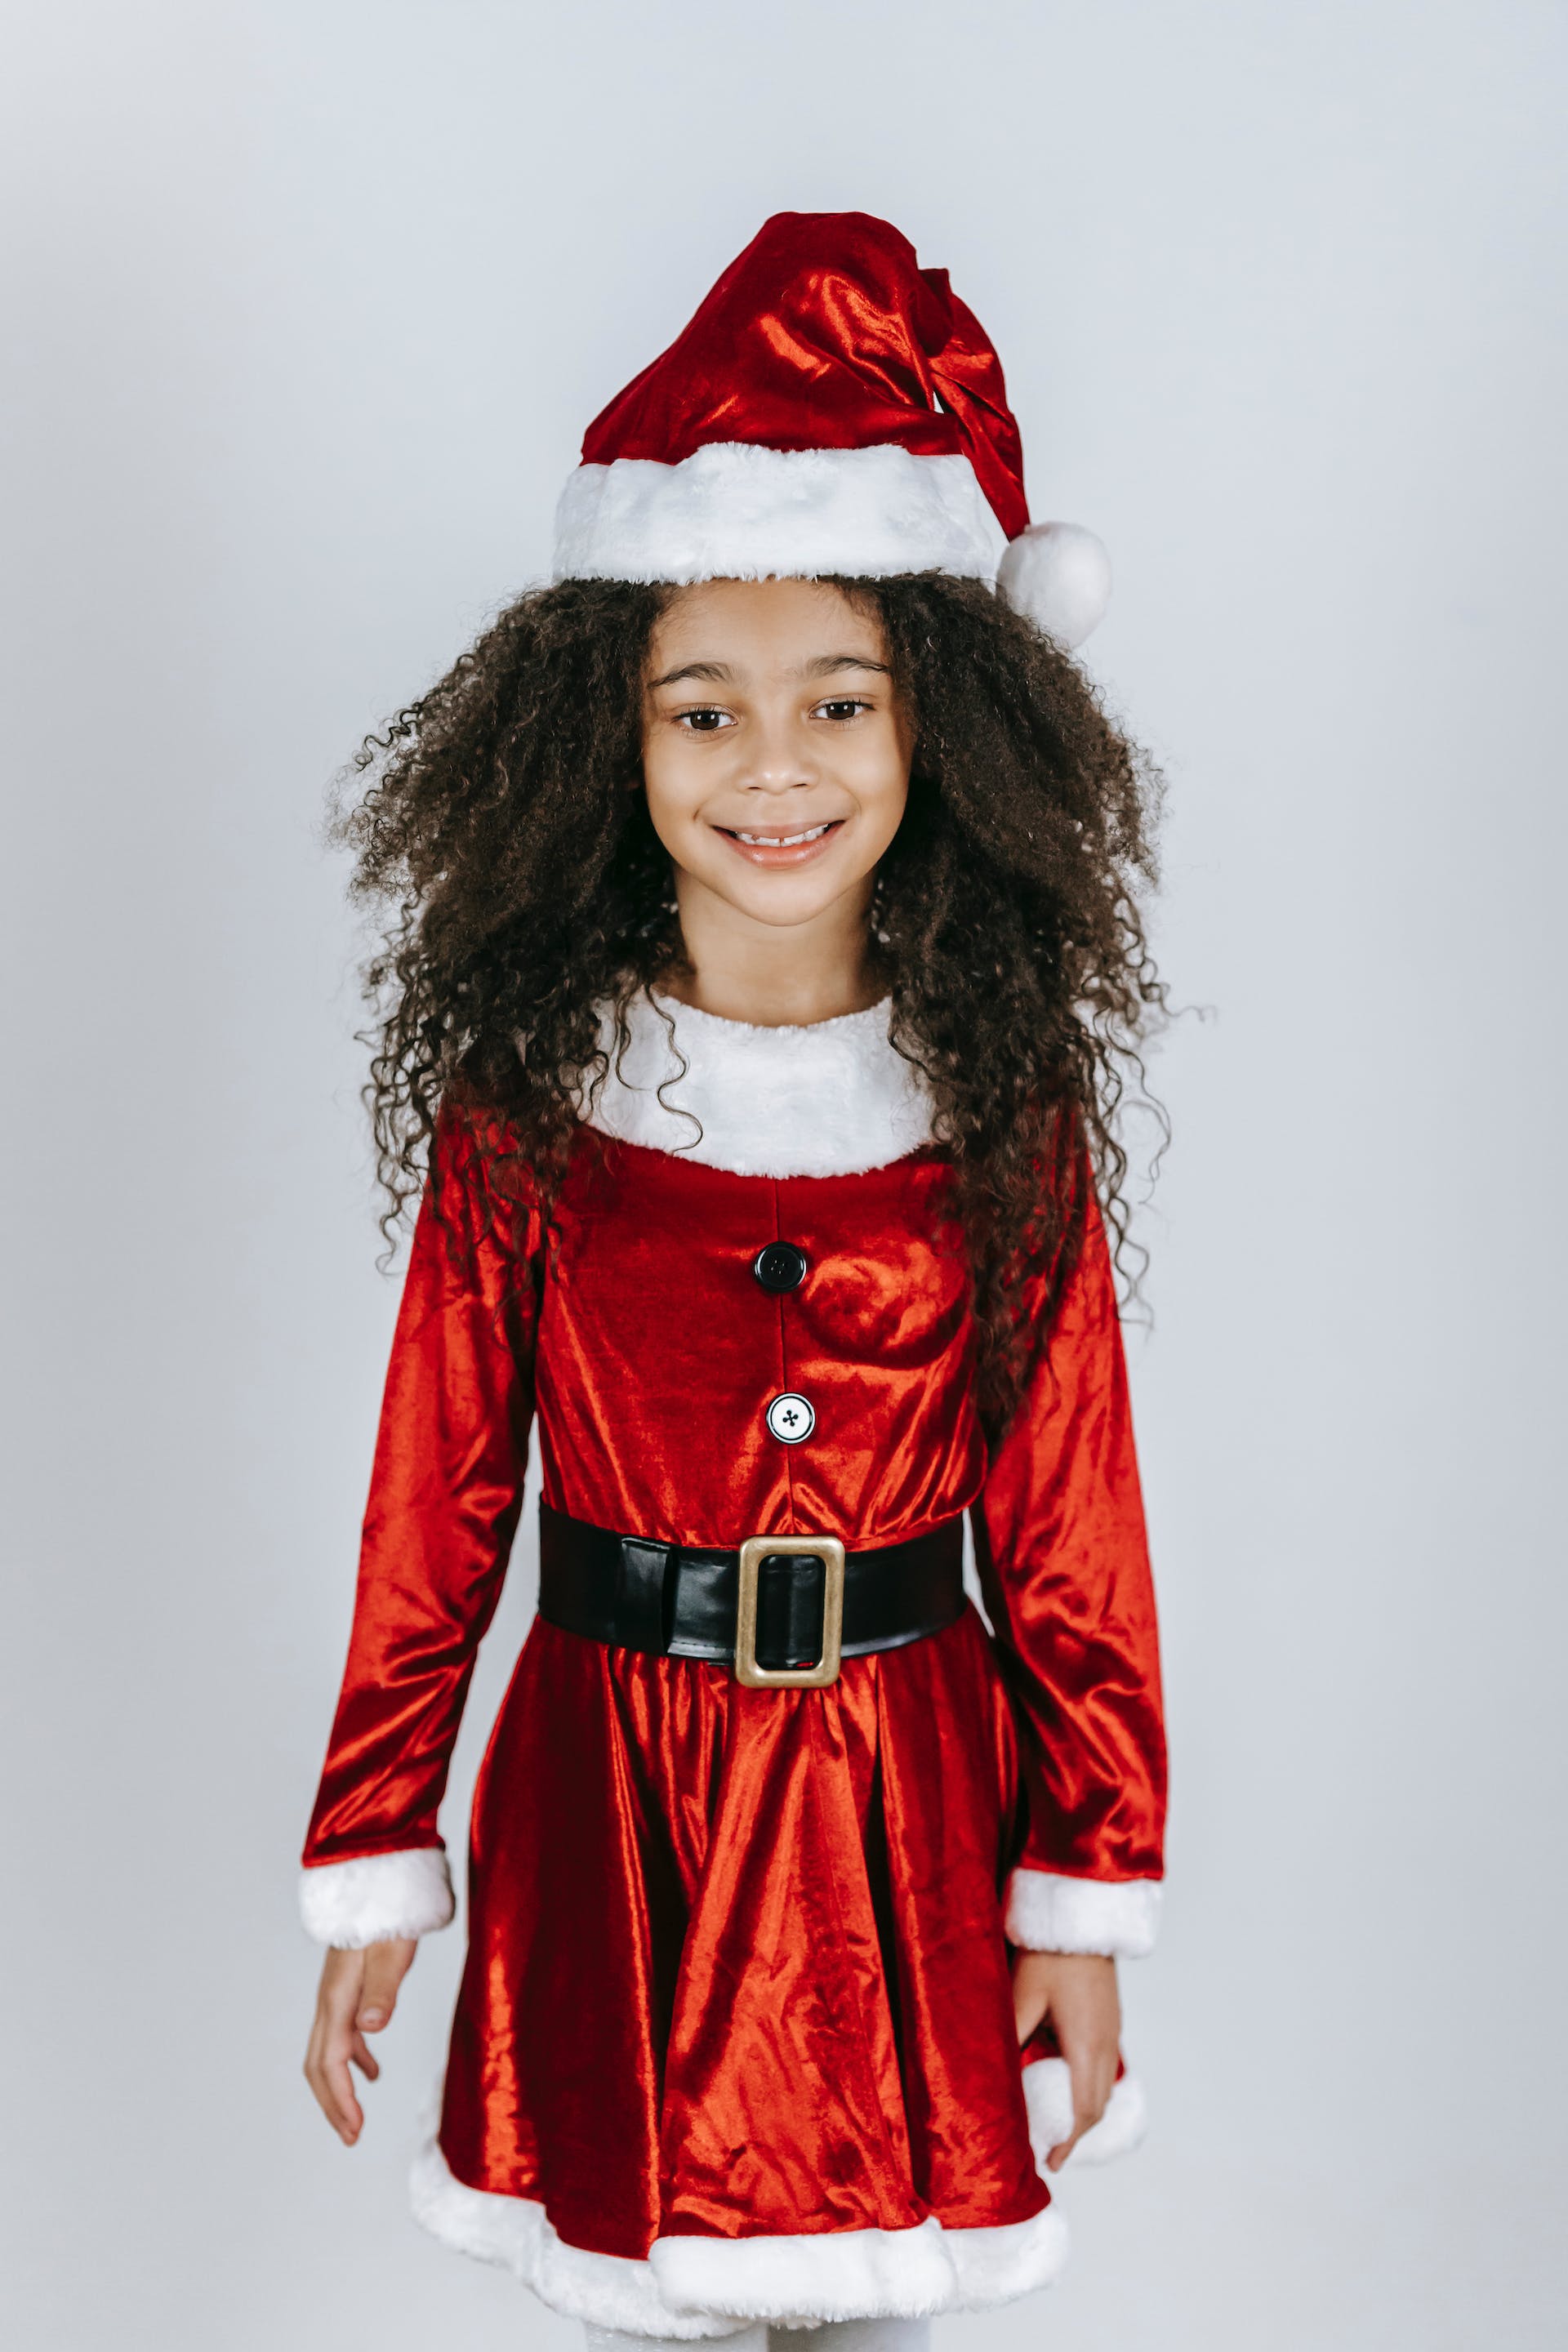 Une petite fille en tenue de père Noël | Source : Pexels